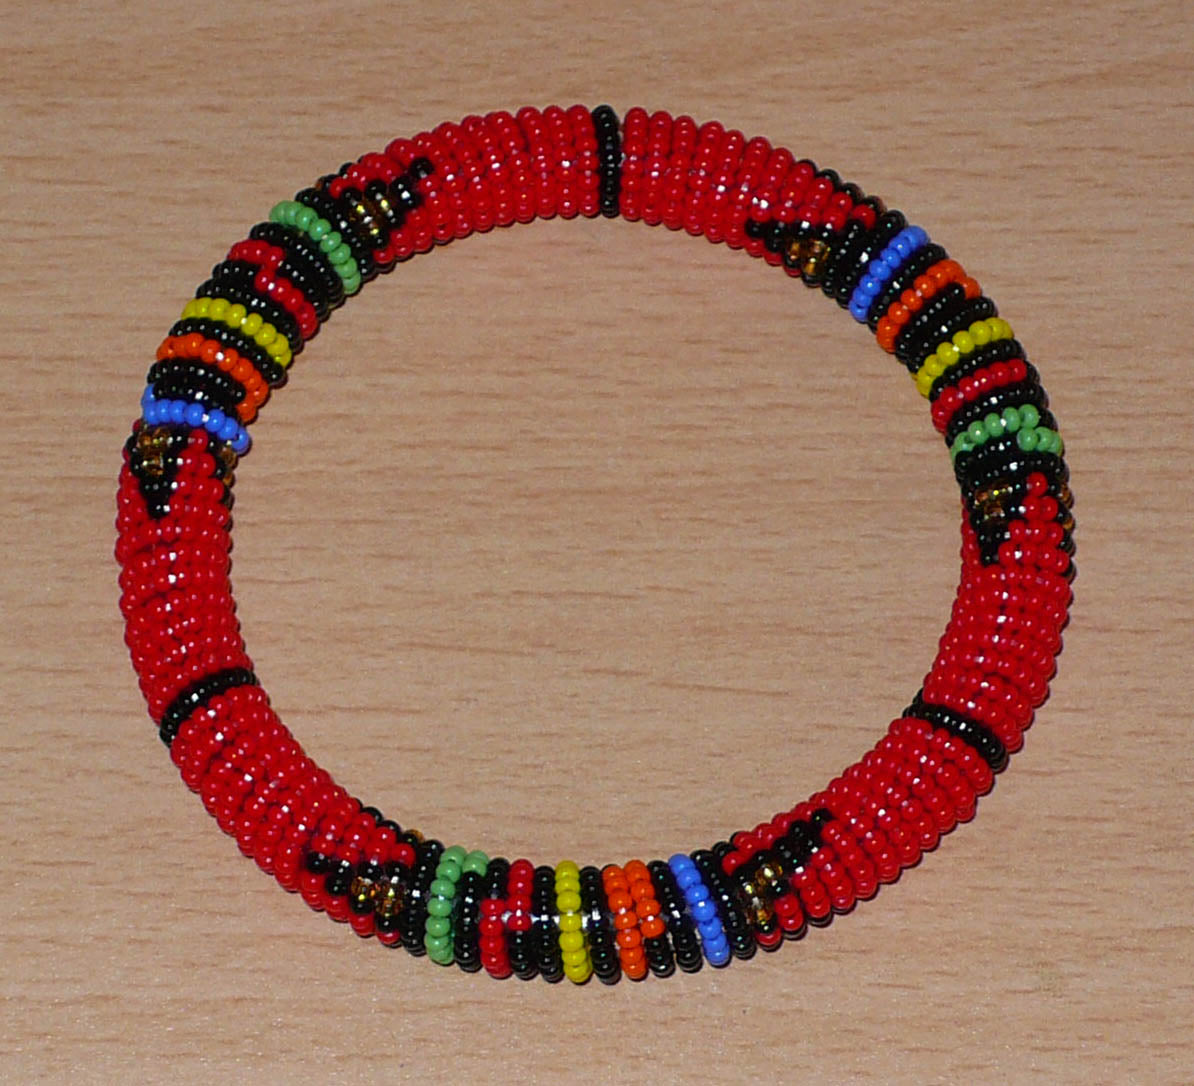 Bracelet africain tubulaire à motifs traditionnels zoulous composé de perles de rocaille rouges et multicolores enfilées sur du fil de nylon enroulé autour d'un tube en plastique.  Ce bracelet a une circonférence interne de 21 cm, un diamètre interne de 6,5 cm et une épaisseur de 1 cm.  Unisexe, il peut être porté par une femme ou par un homme.